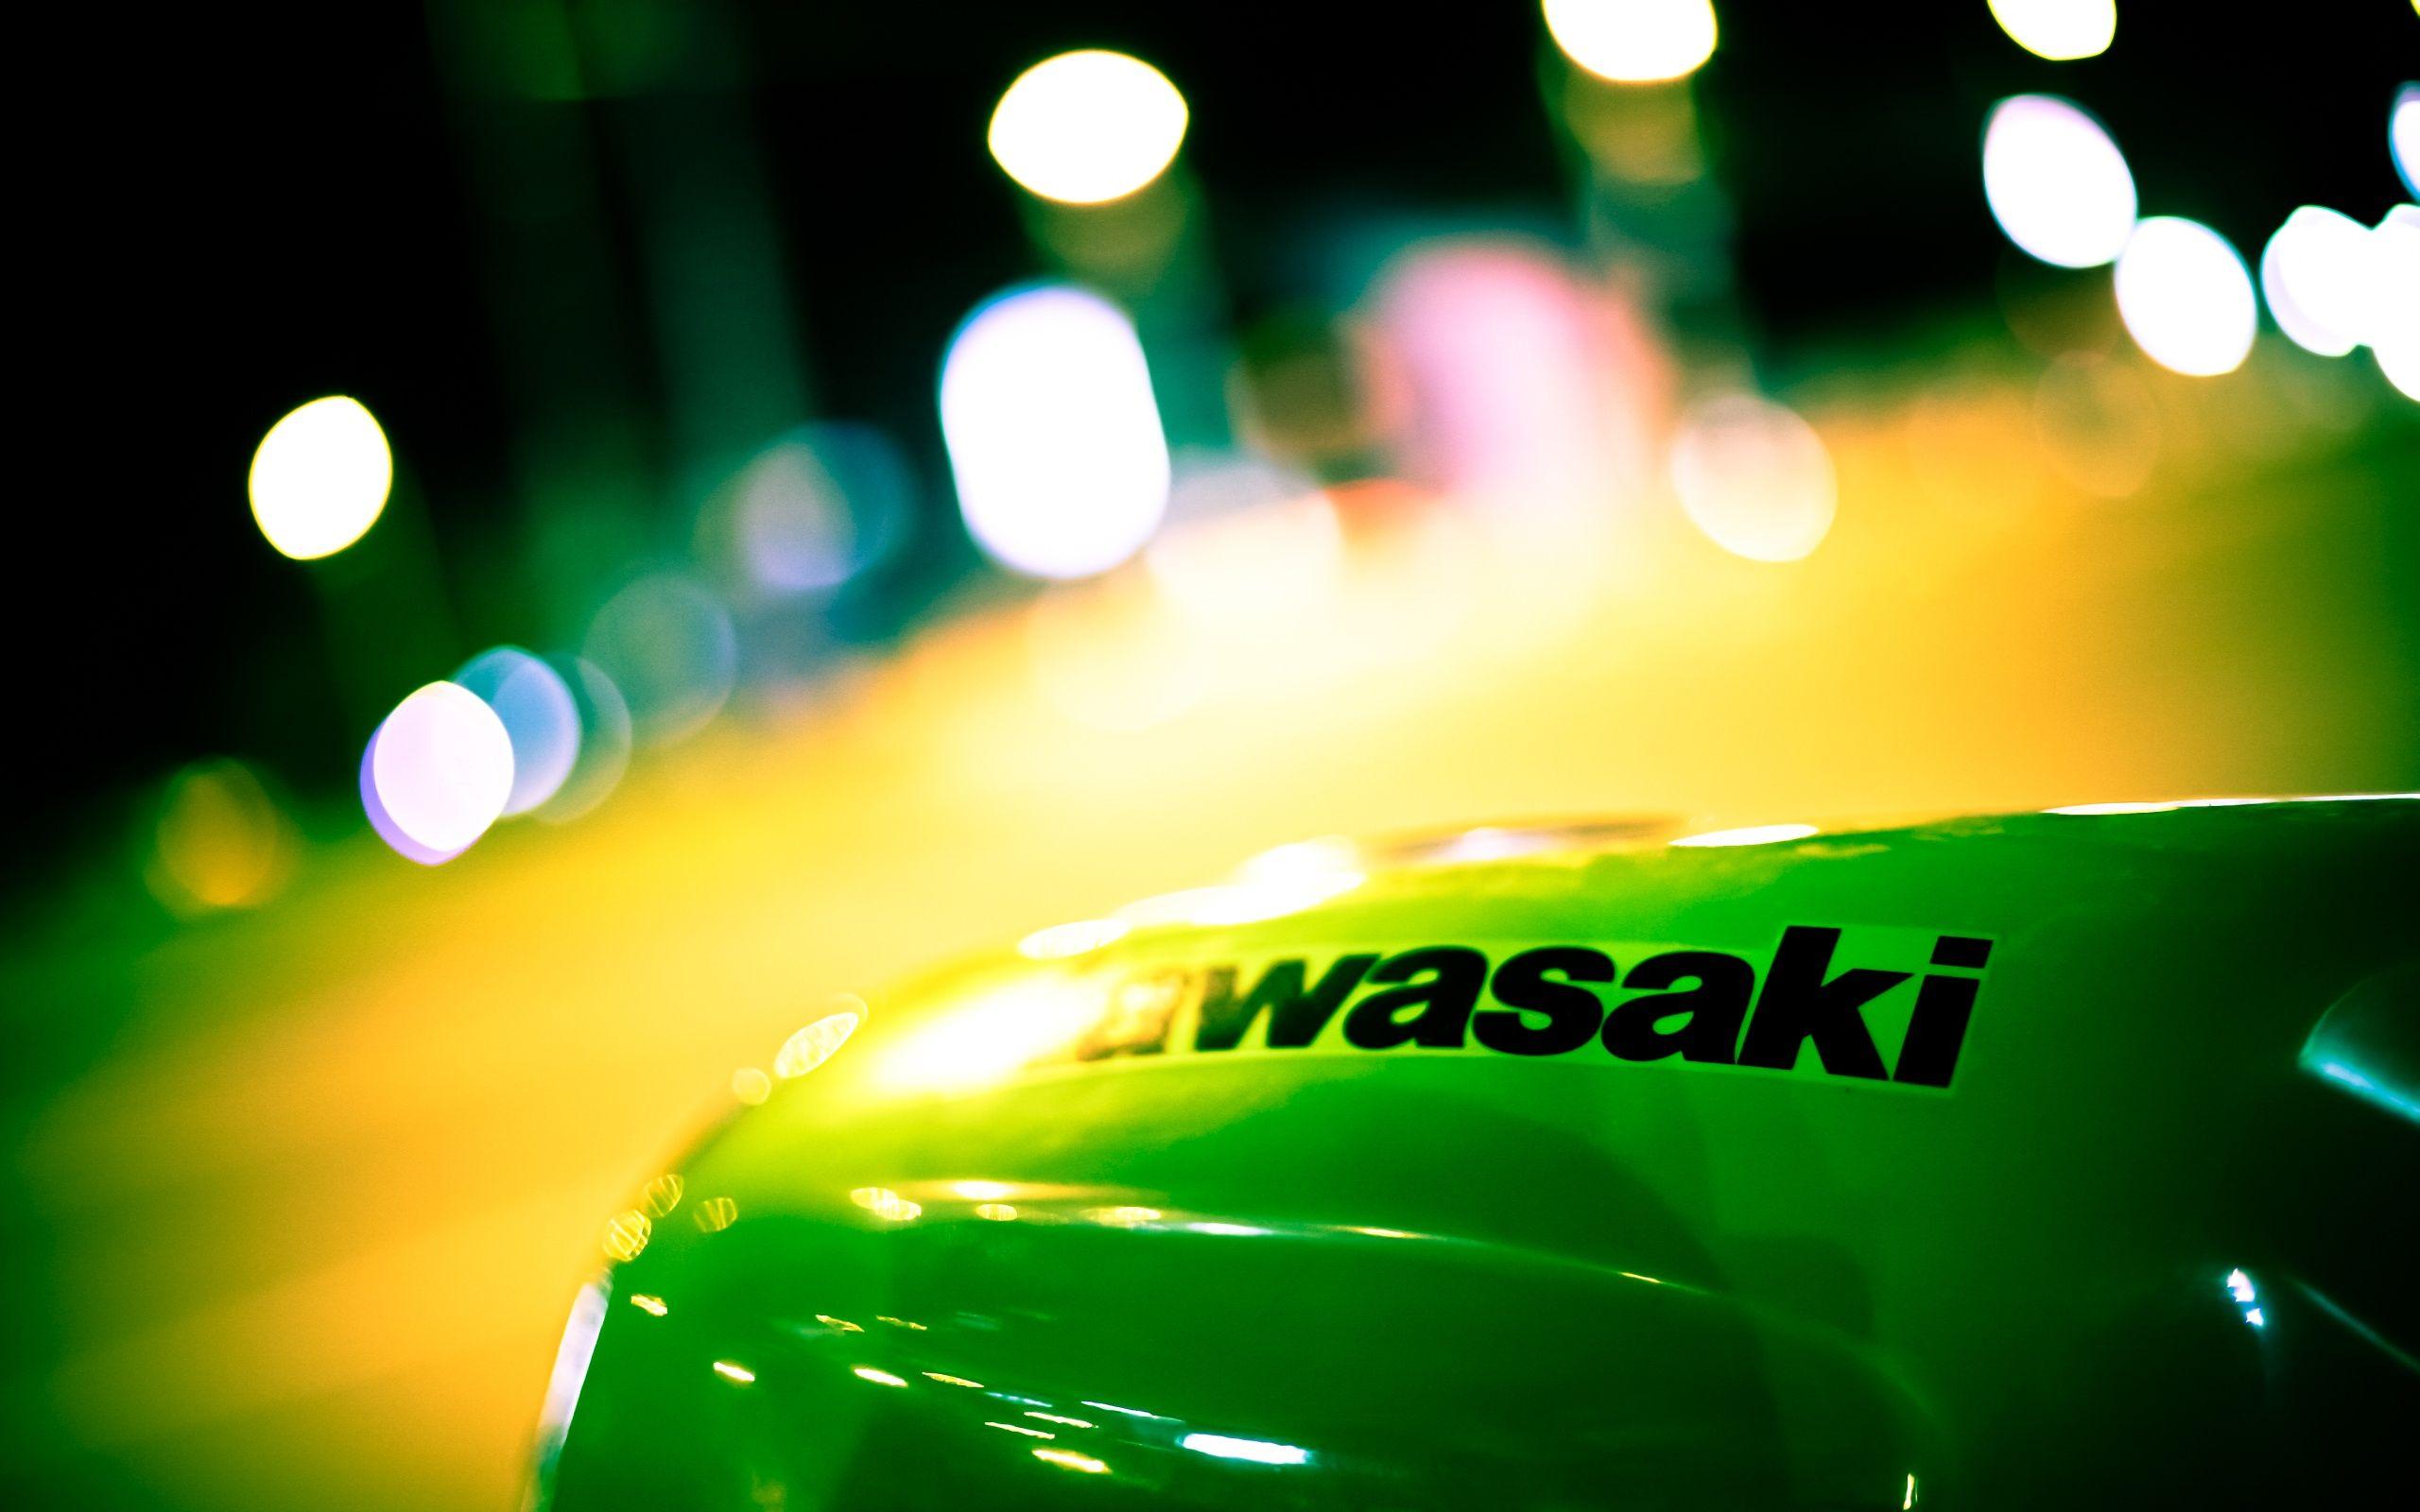 Kawasaki Logo Wallpaper 22838 2560x1600 px